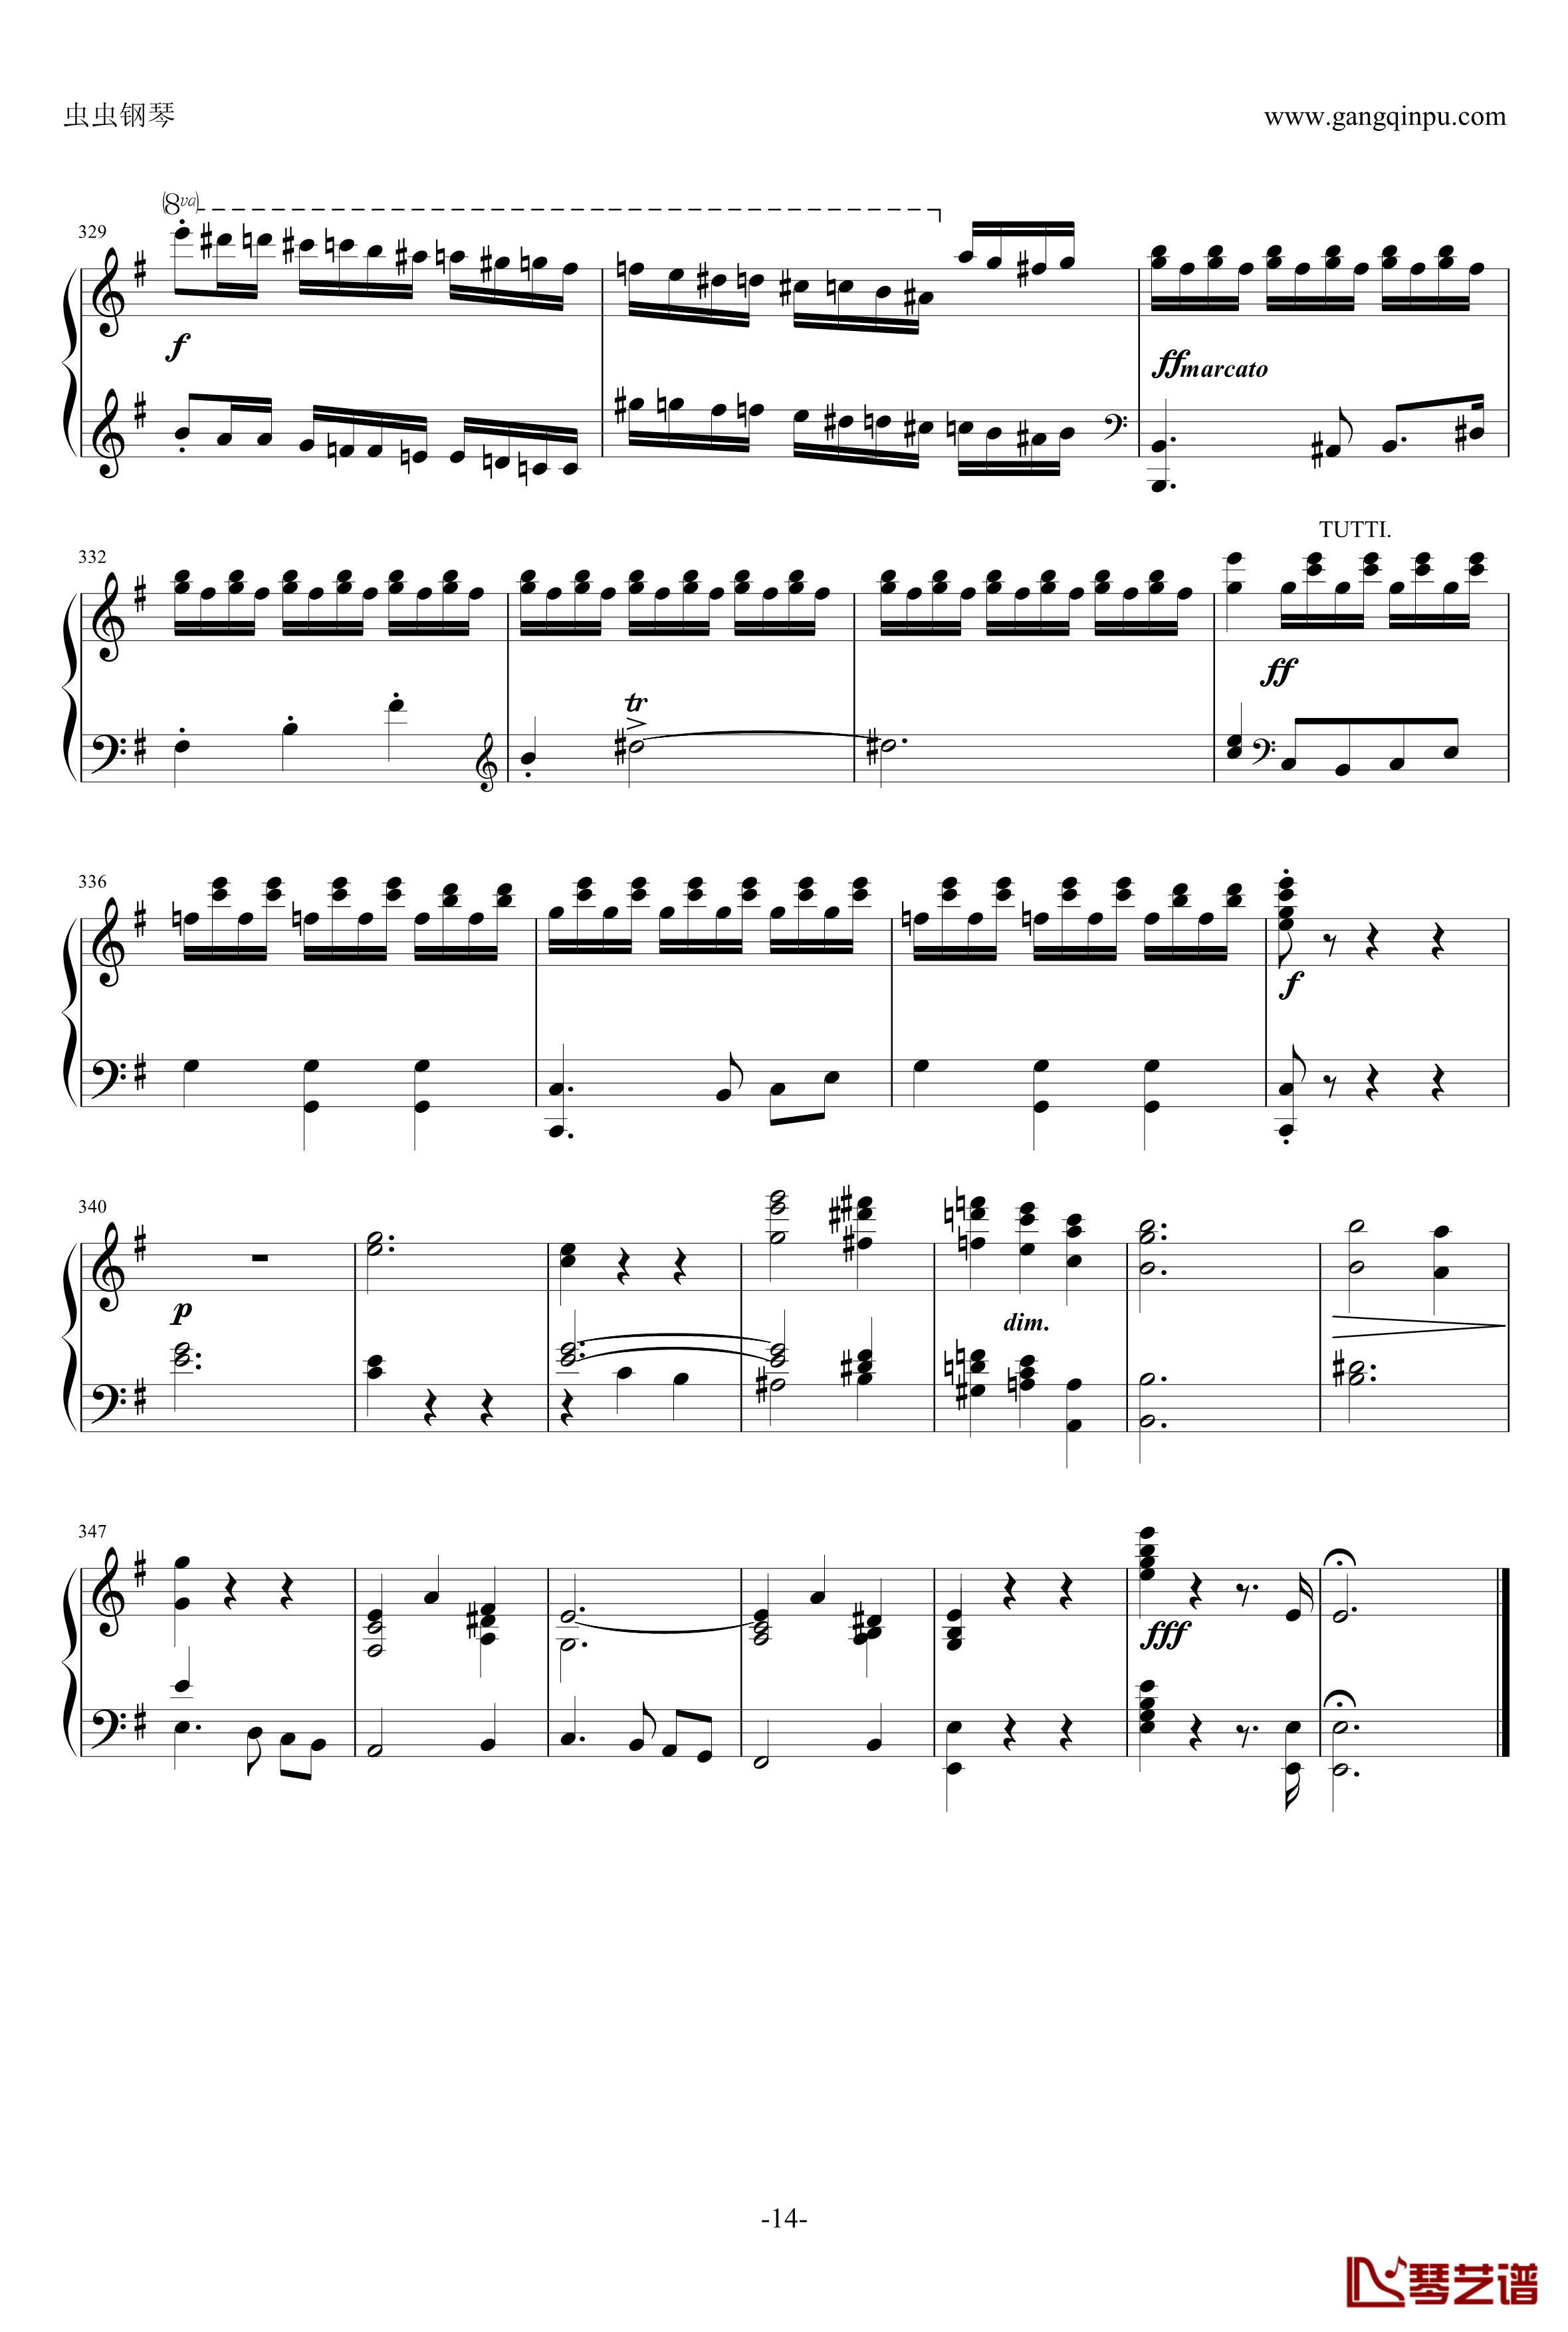 e小调钢琴协奏曲钢琴谱-乐之琴简易钢琴版-肖邦-chopin14